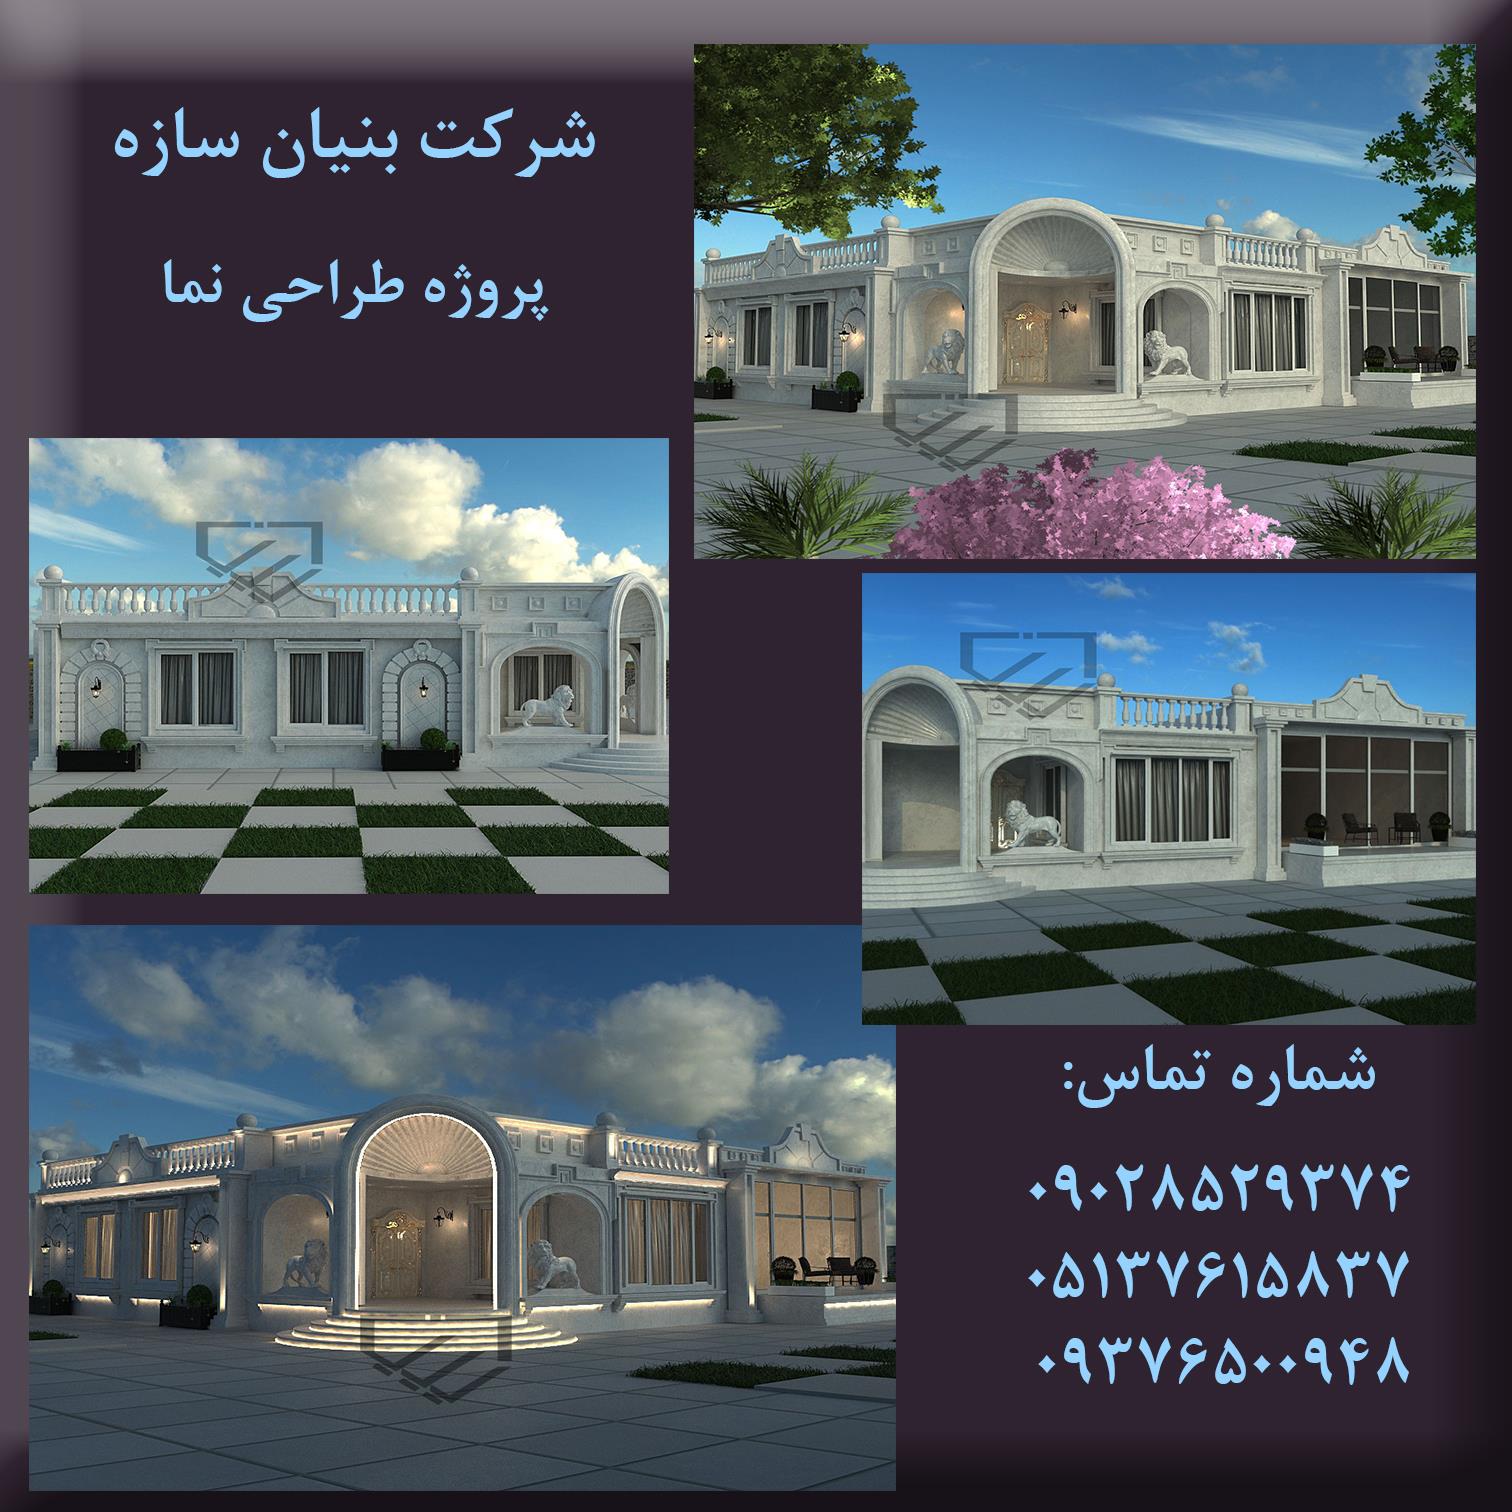 طراحی-و-اجرای-حرفه-ای-نما-در-مشهد-ایرانی-و-کلاسیک